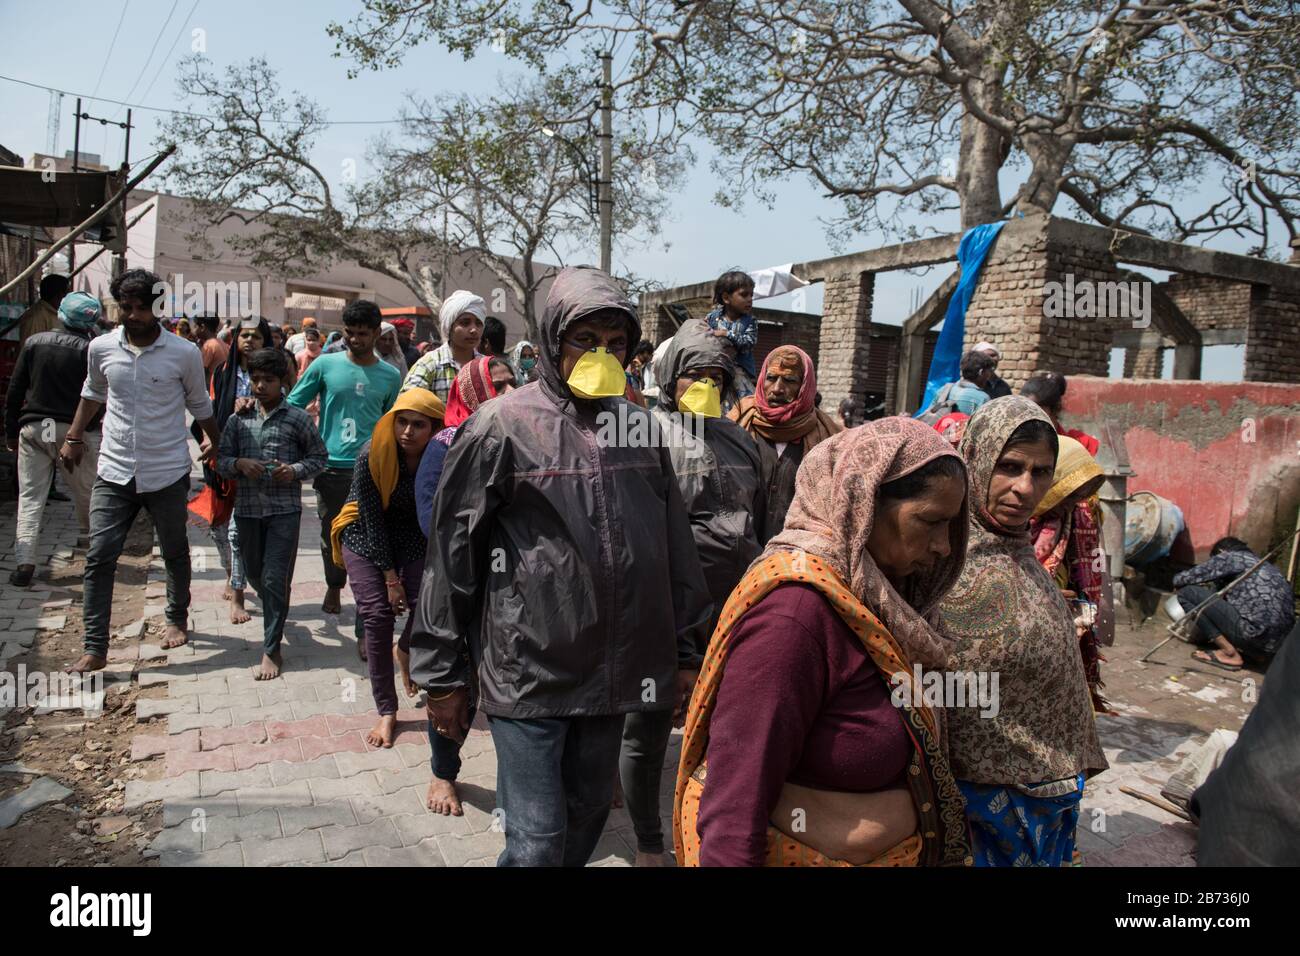 Vrindivan, Uttar Pradesh, India: Una pareja que usa máscara facial durante una procesión como preventiva contra la propagación del brote de coronavirus COVID-19. Foto de stock